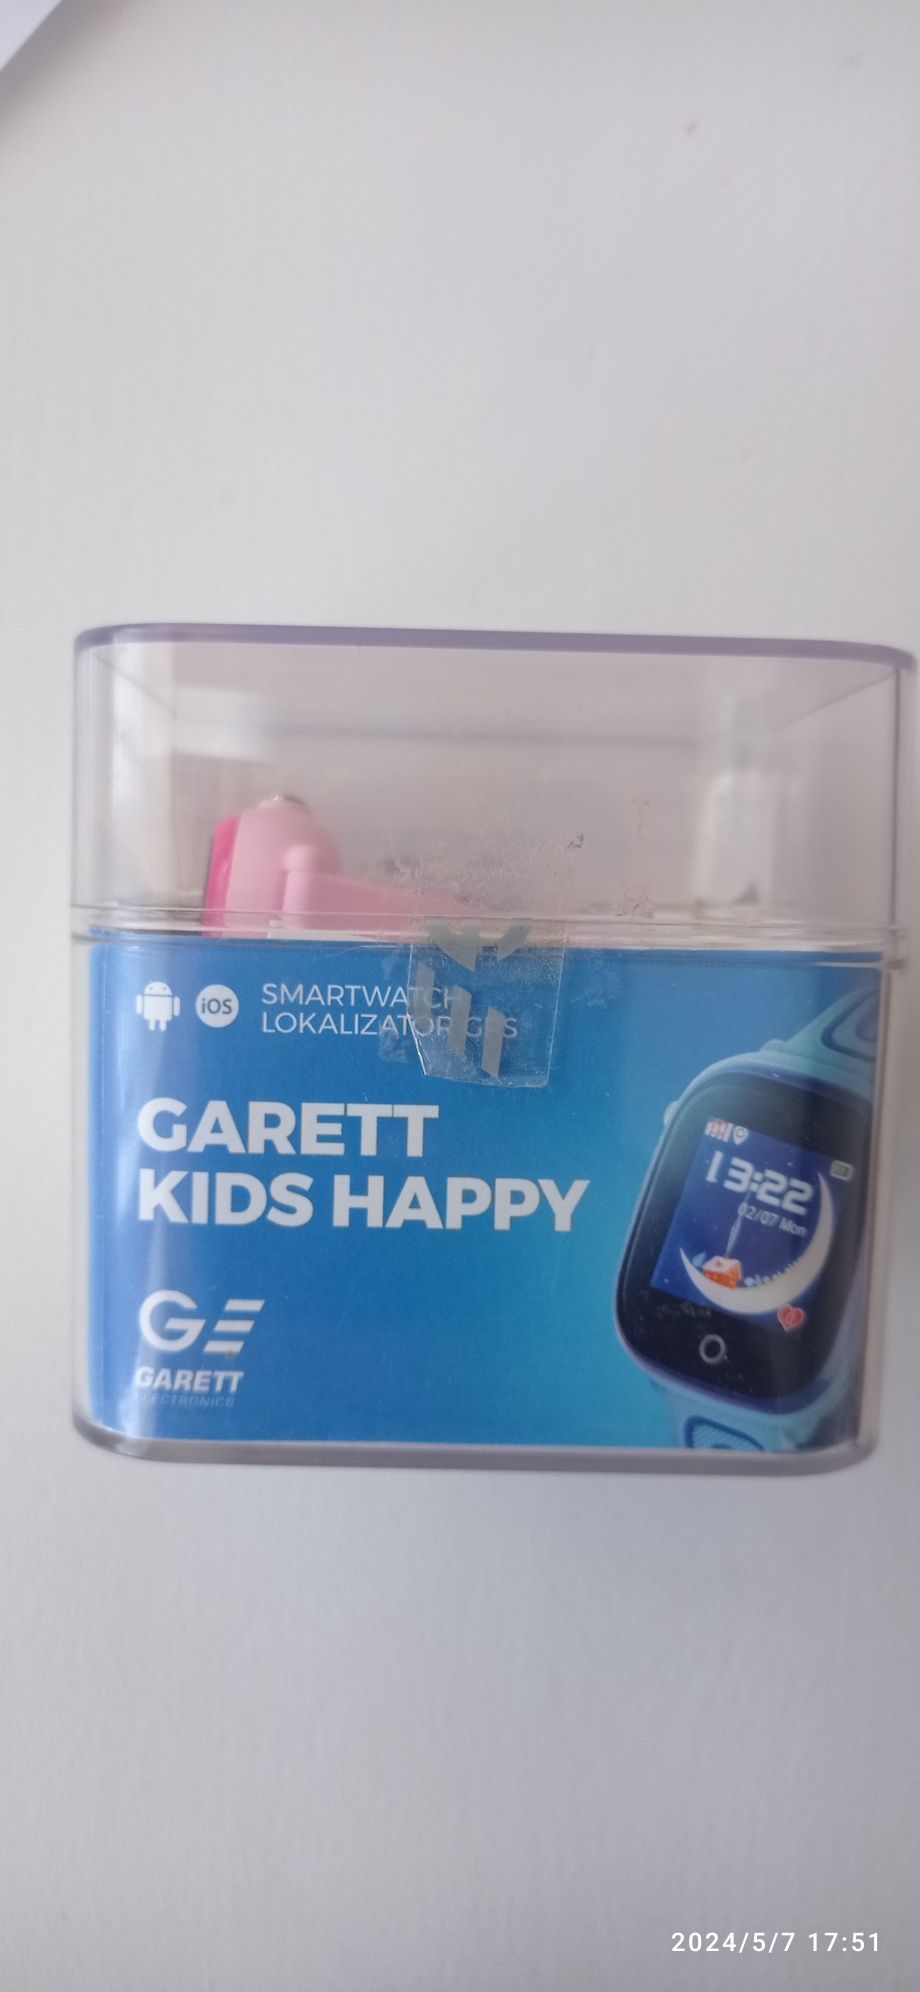 Smartwatch Garett Kids Happy